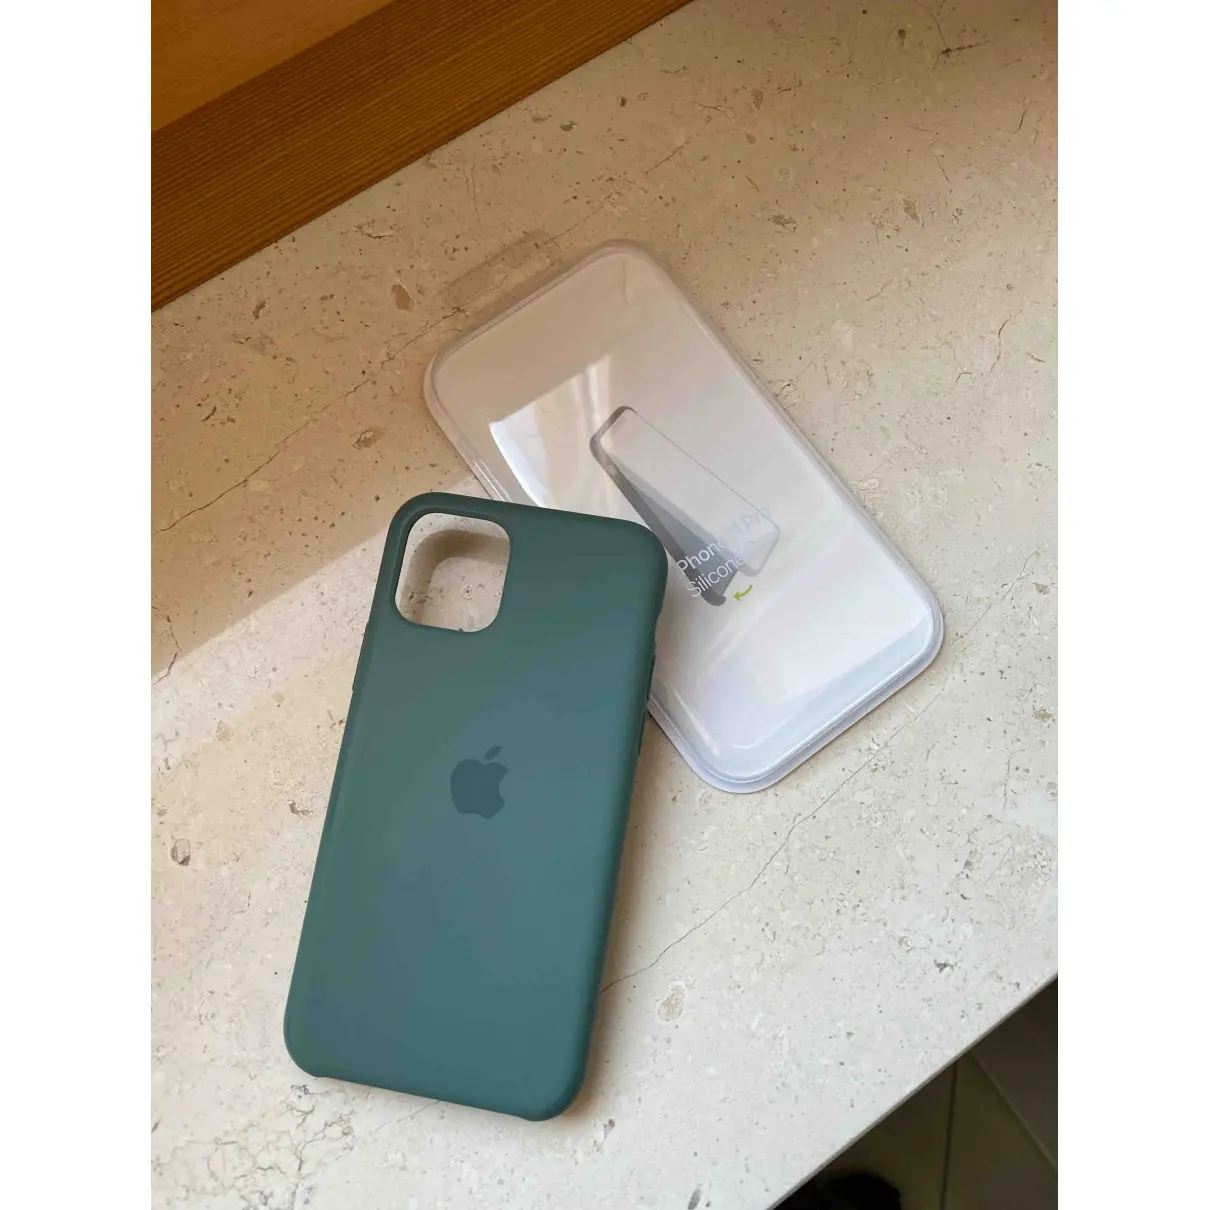 Buy Apple Iphone case online